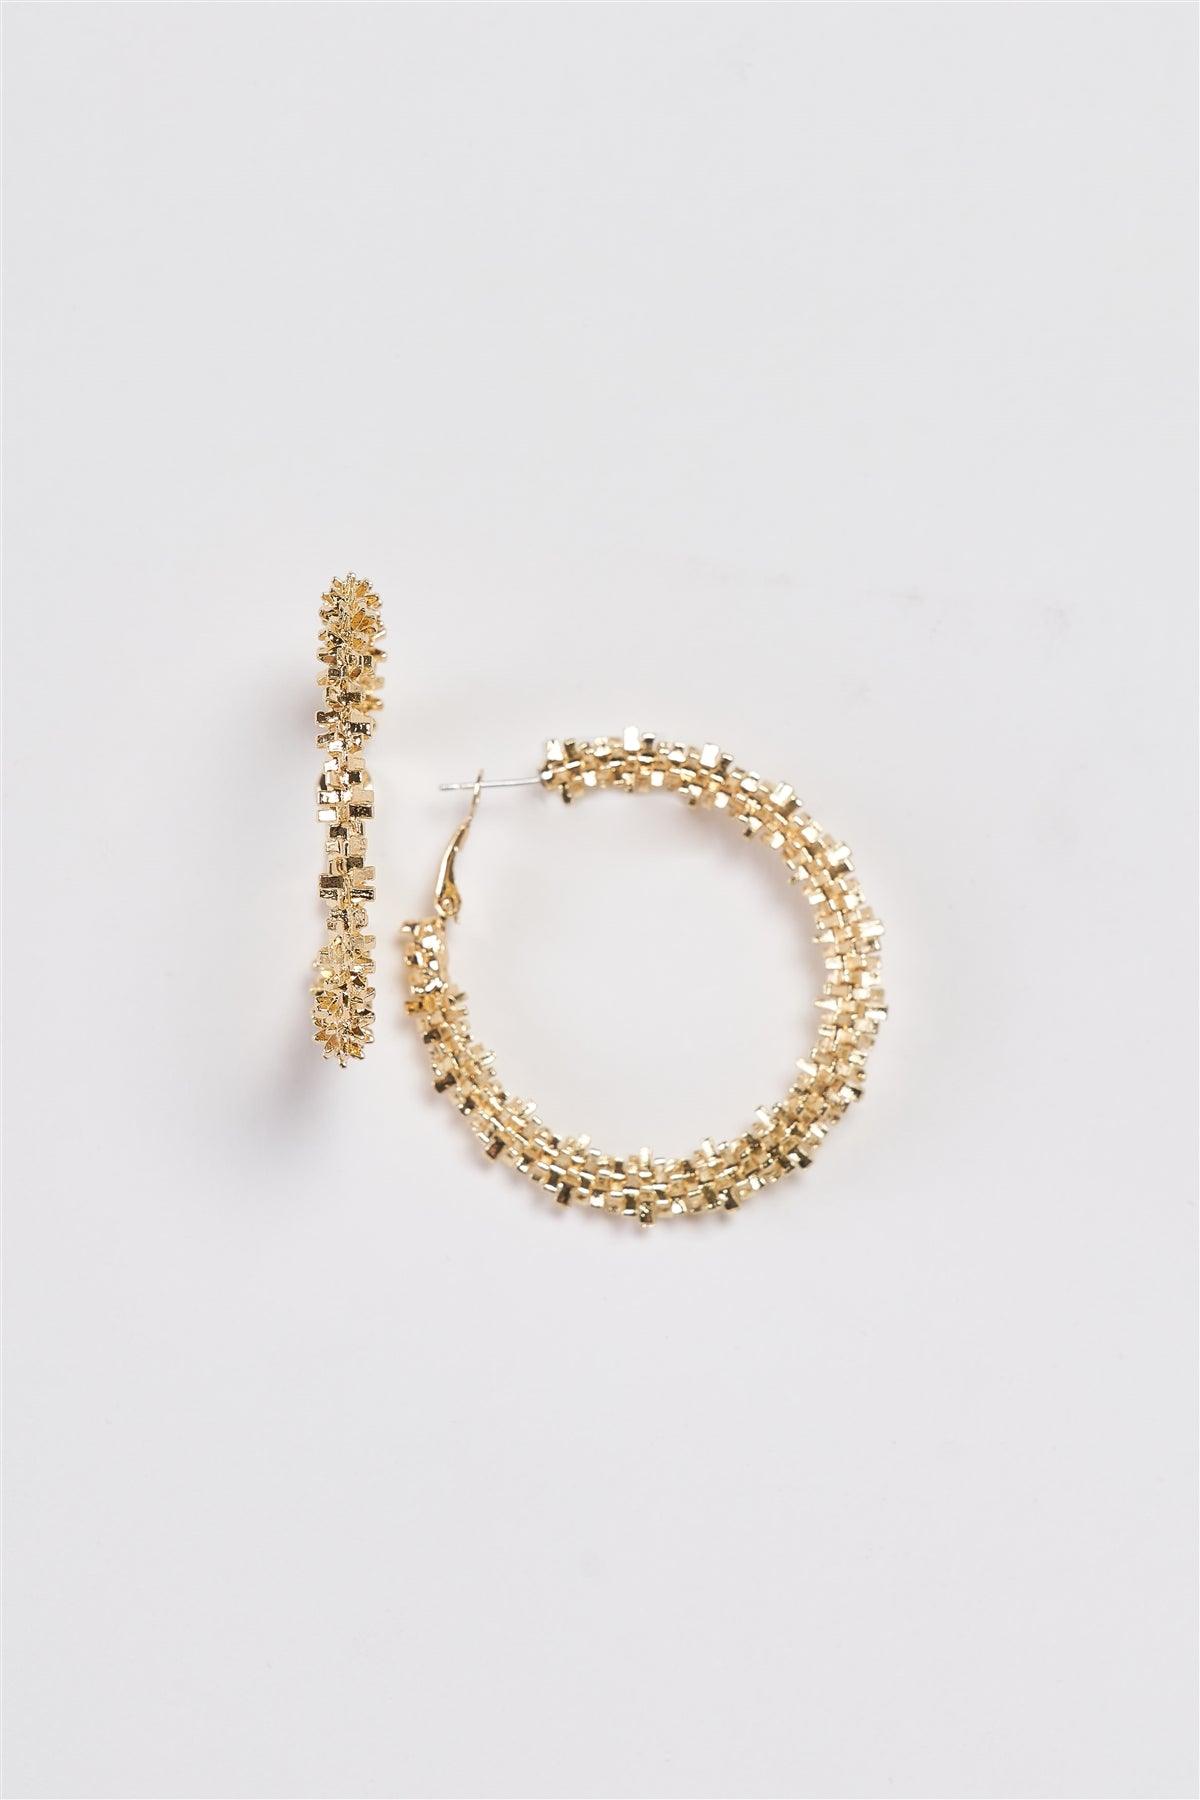 Gold Crashed Crystal Hoop Earrings /3 Pairs